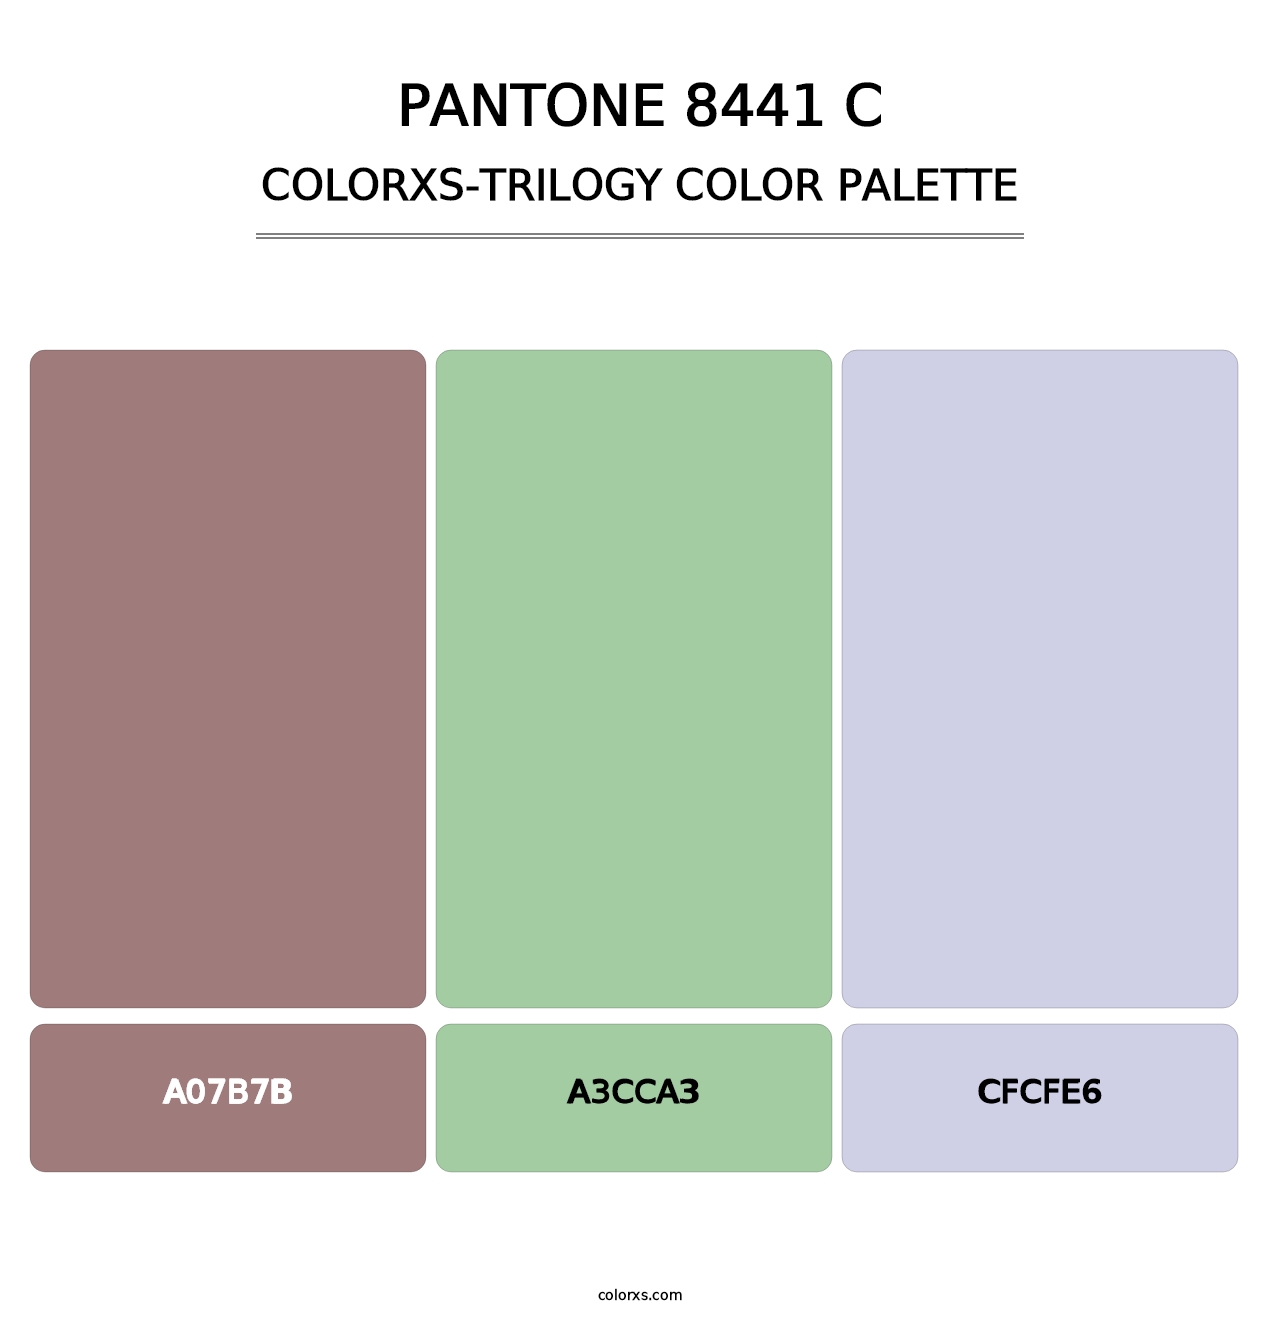 PANTONE 8441 C - Colorxs Trilogy Palette